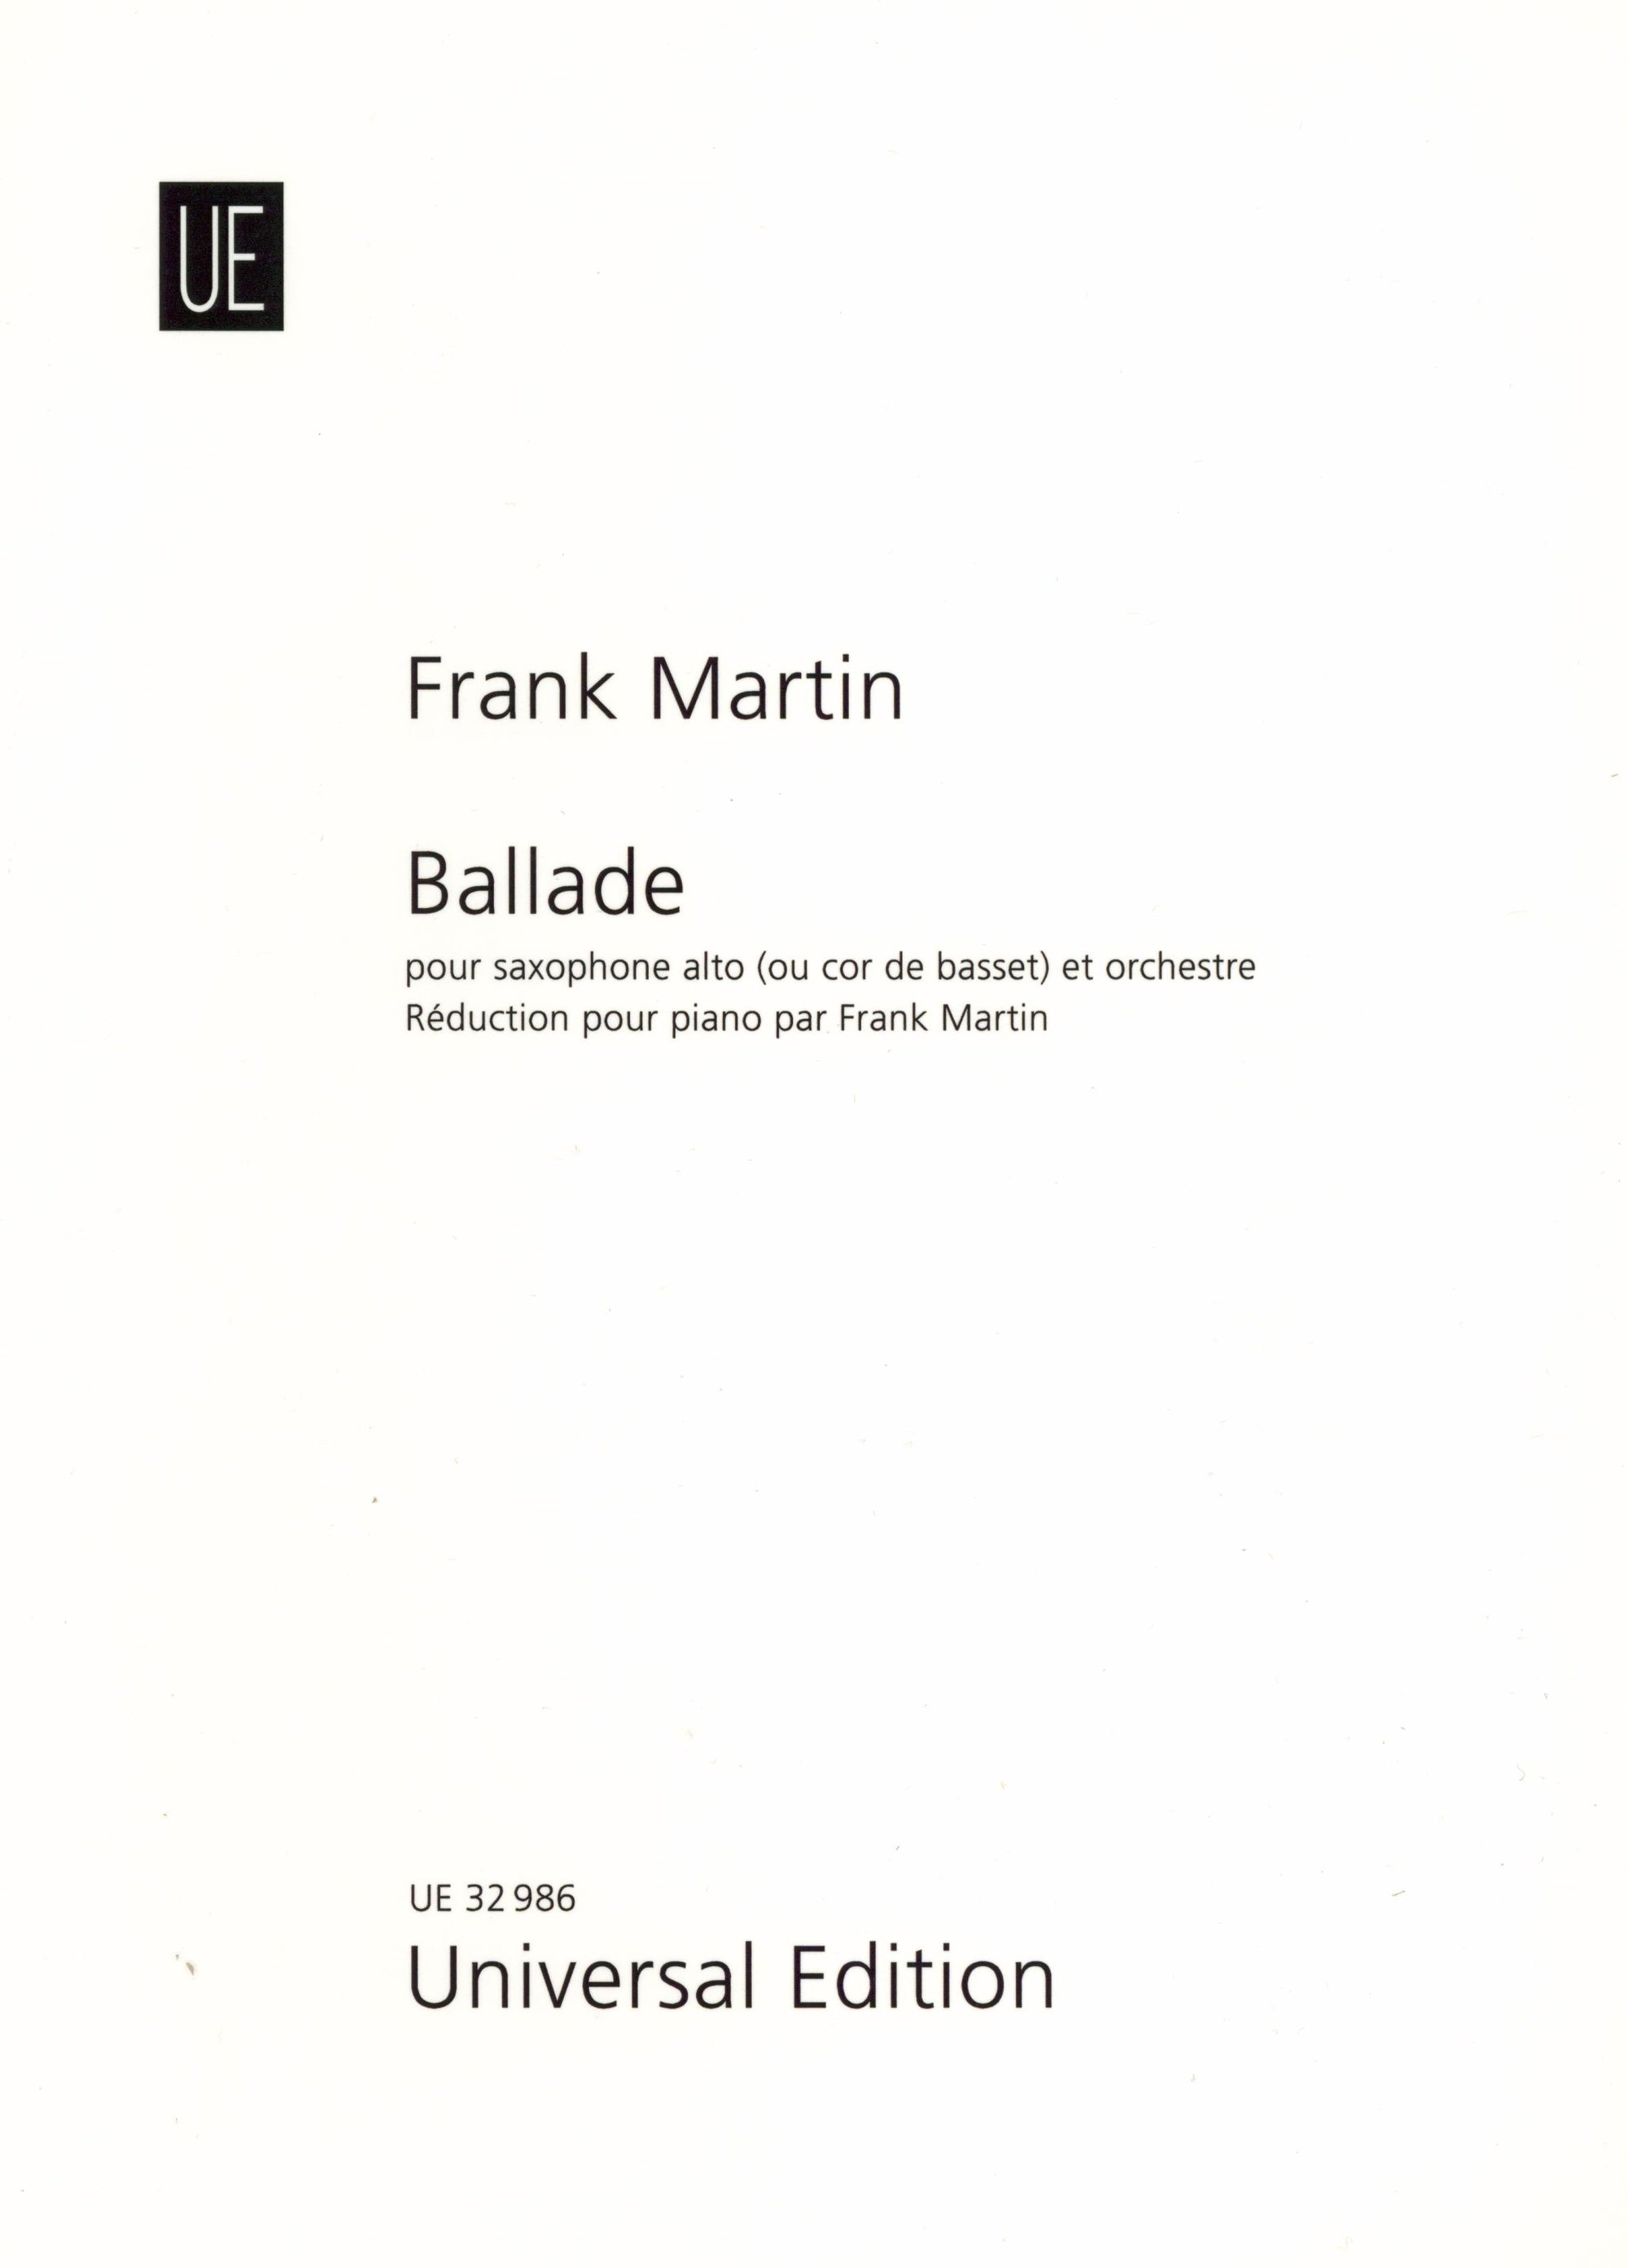 F. Martin: Ballade for Alto Saxophone